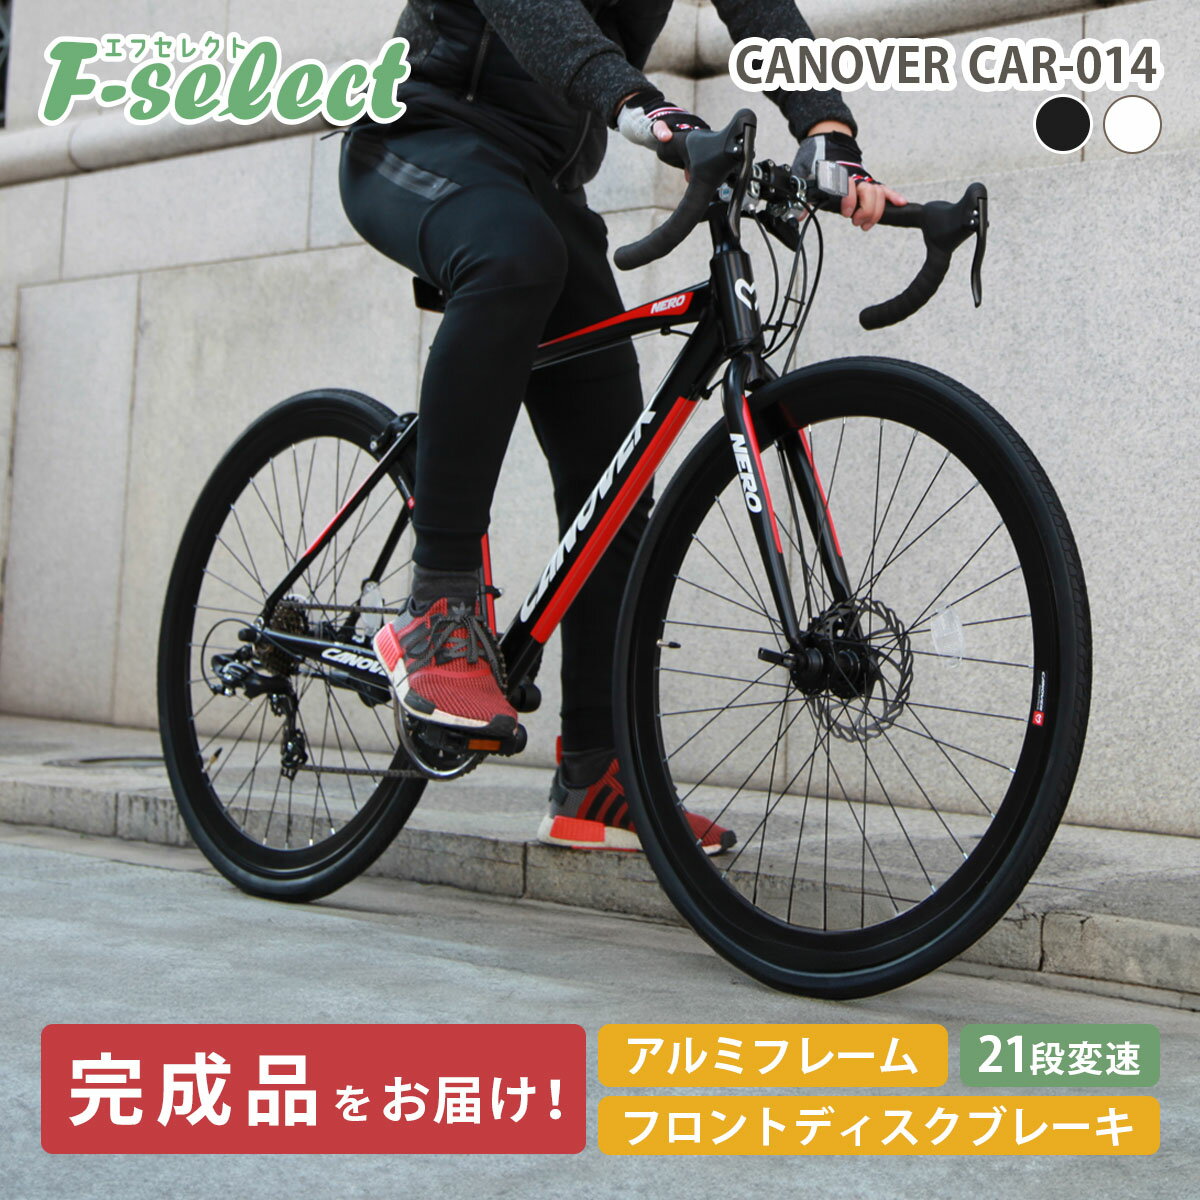 【完成品出荷 / 置き配可能 / 東京神奈川配送無料】ロードバイク 自転車 グラベルロード 700 28C シマノ21段変速 軽量 アルミフレーム フロントディスクブレーキ カノーバー ネロ CANOVER CAR-…